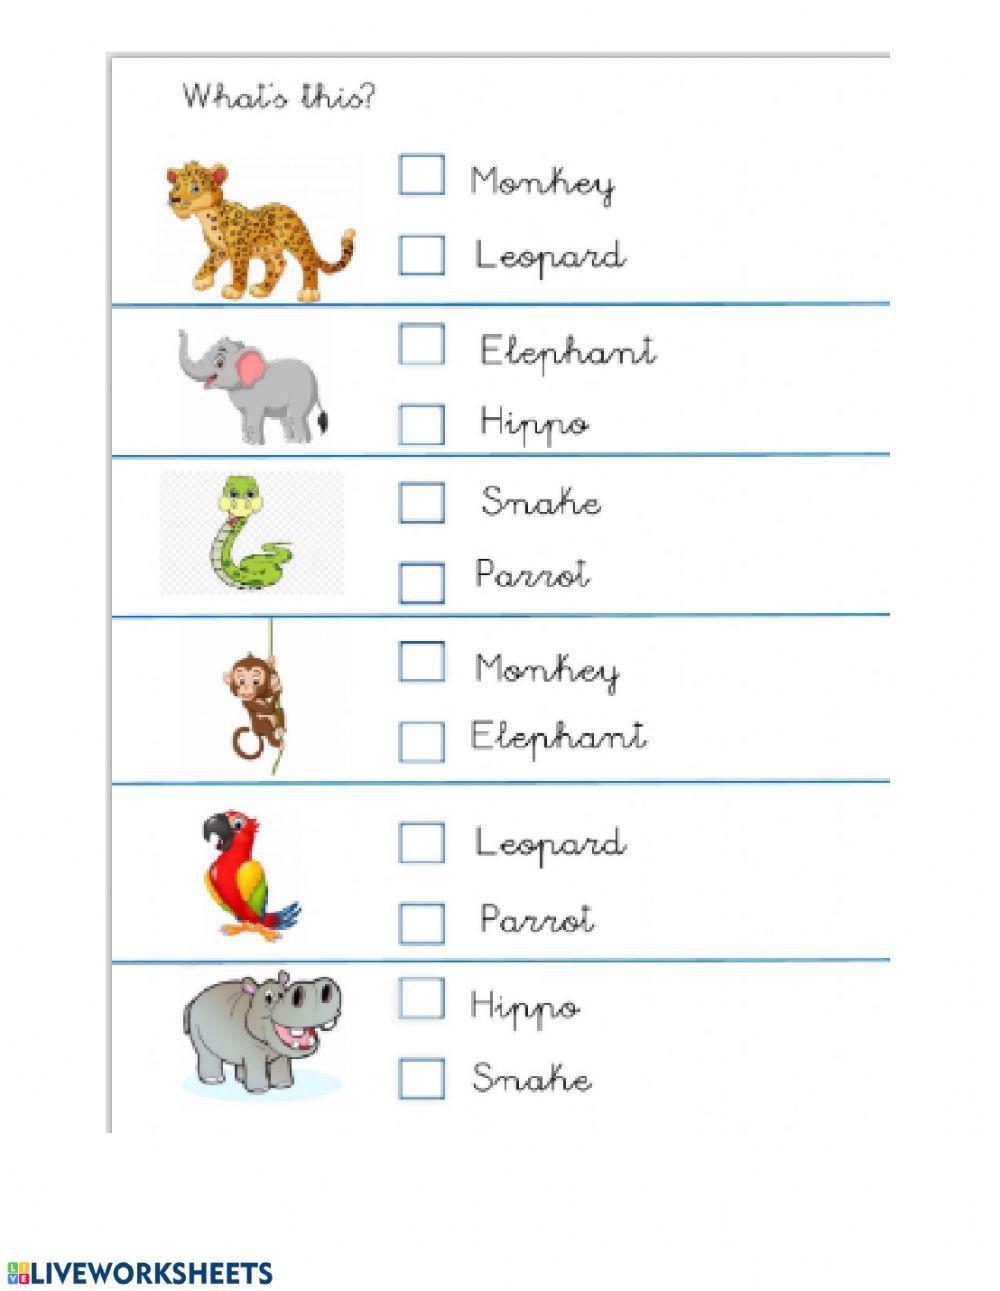 Select the animal